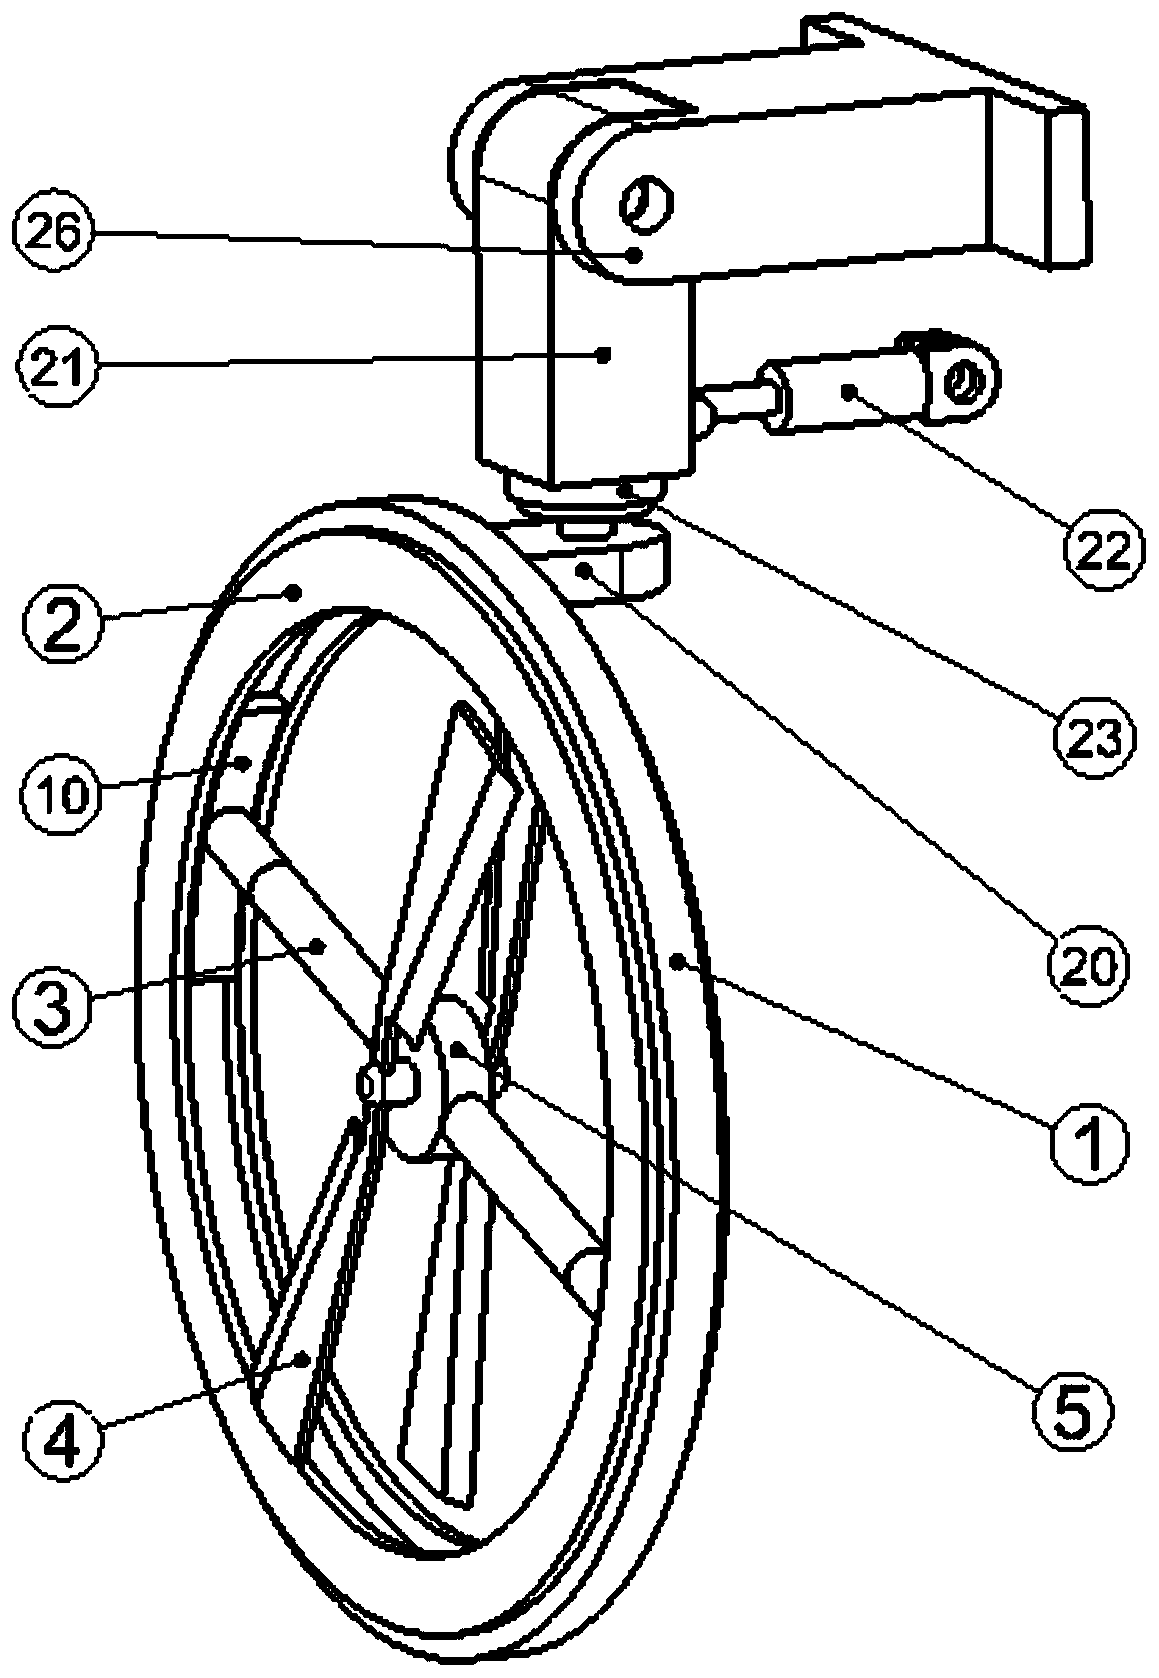 a wheel rotor